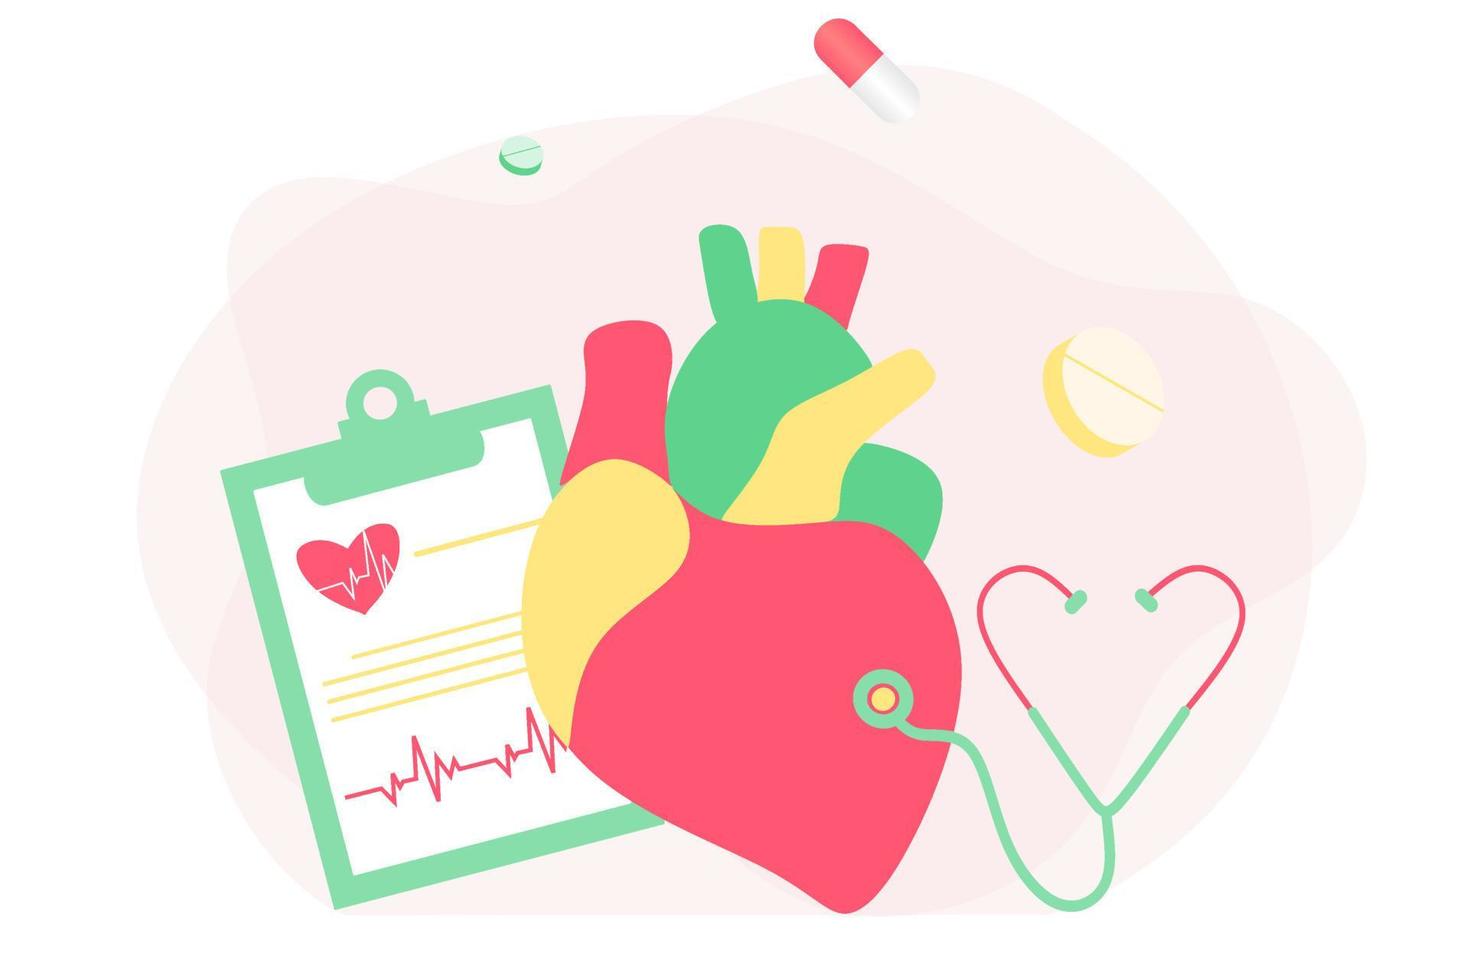 medicação cardíaca moderna, conceito de pesquisa de doenças cardíacas. cardiologista estudando modelo de coração grande, drogas e diagrama de batimentos cardíacos. ilustração vetorial sistema cardiovascular, colesterol, exame médico vetor